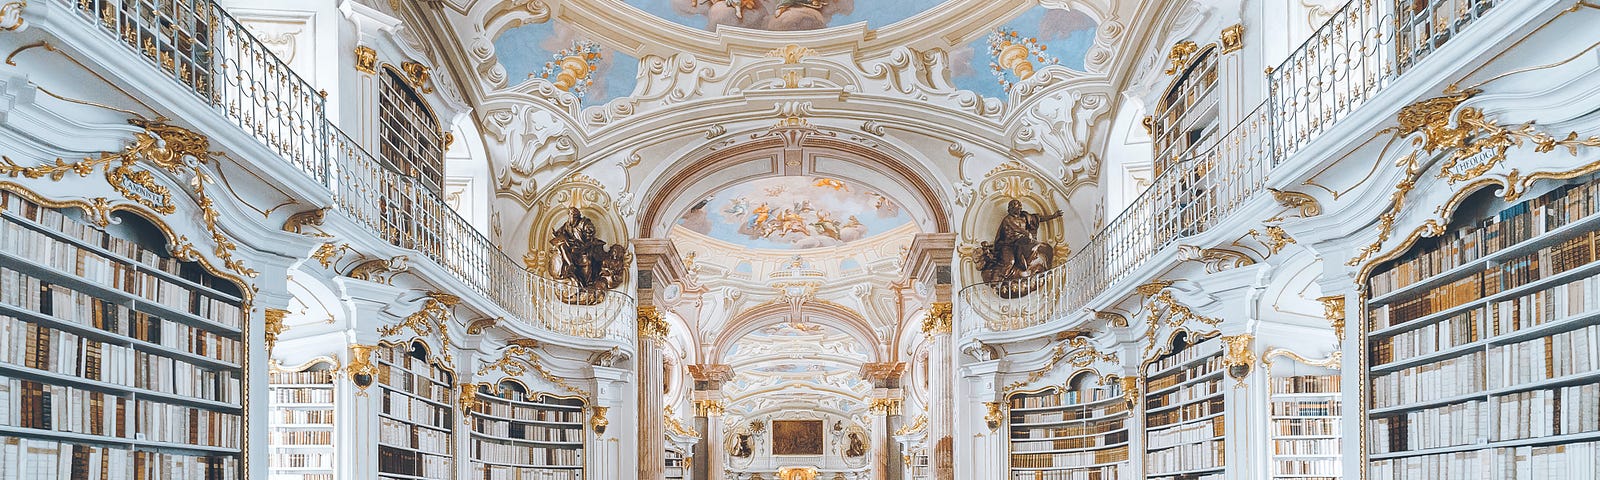 A Baroque library